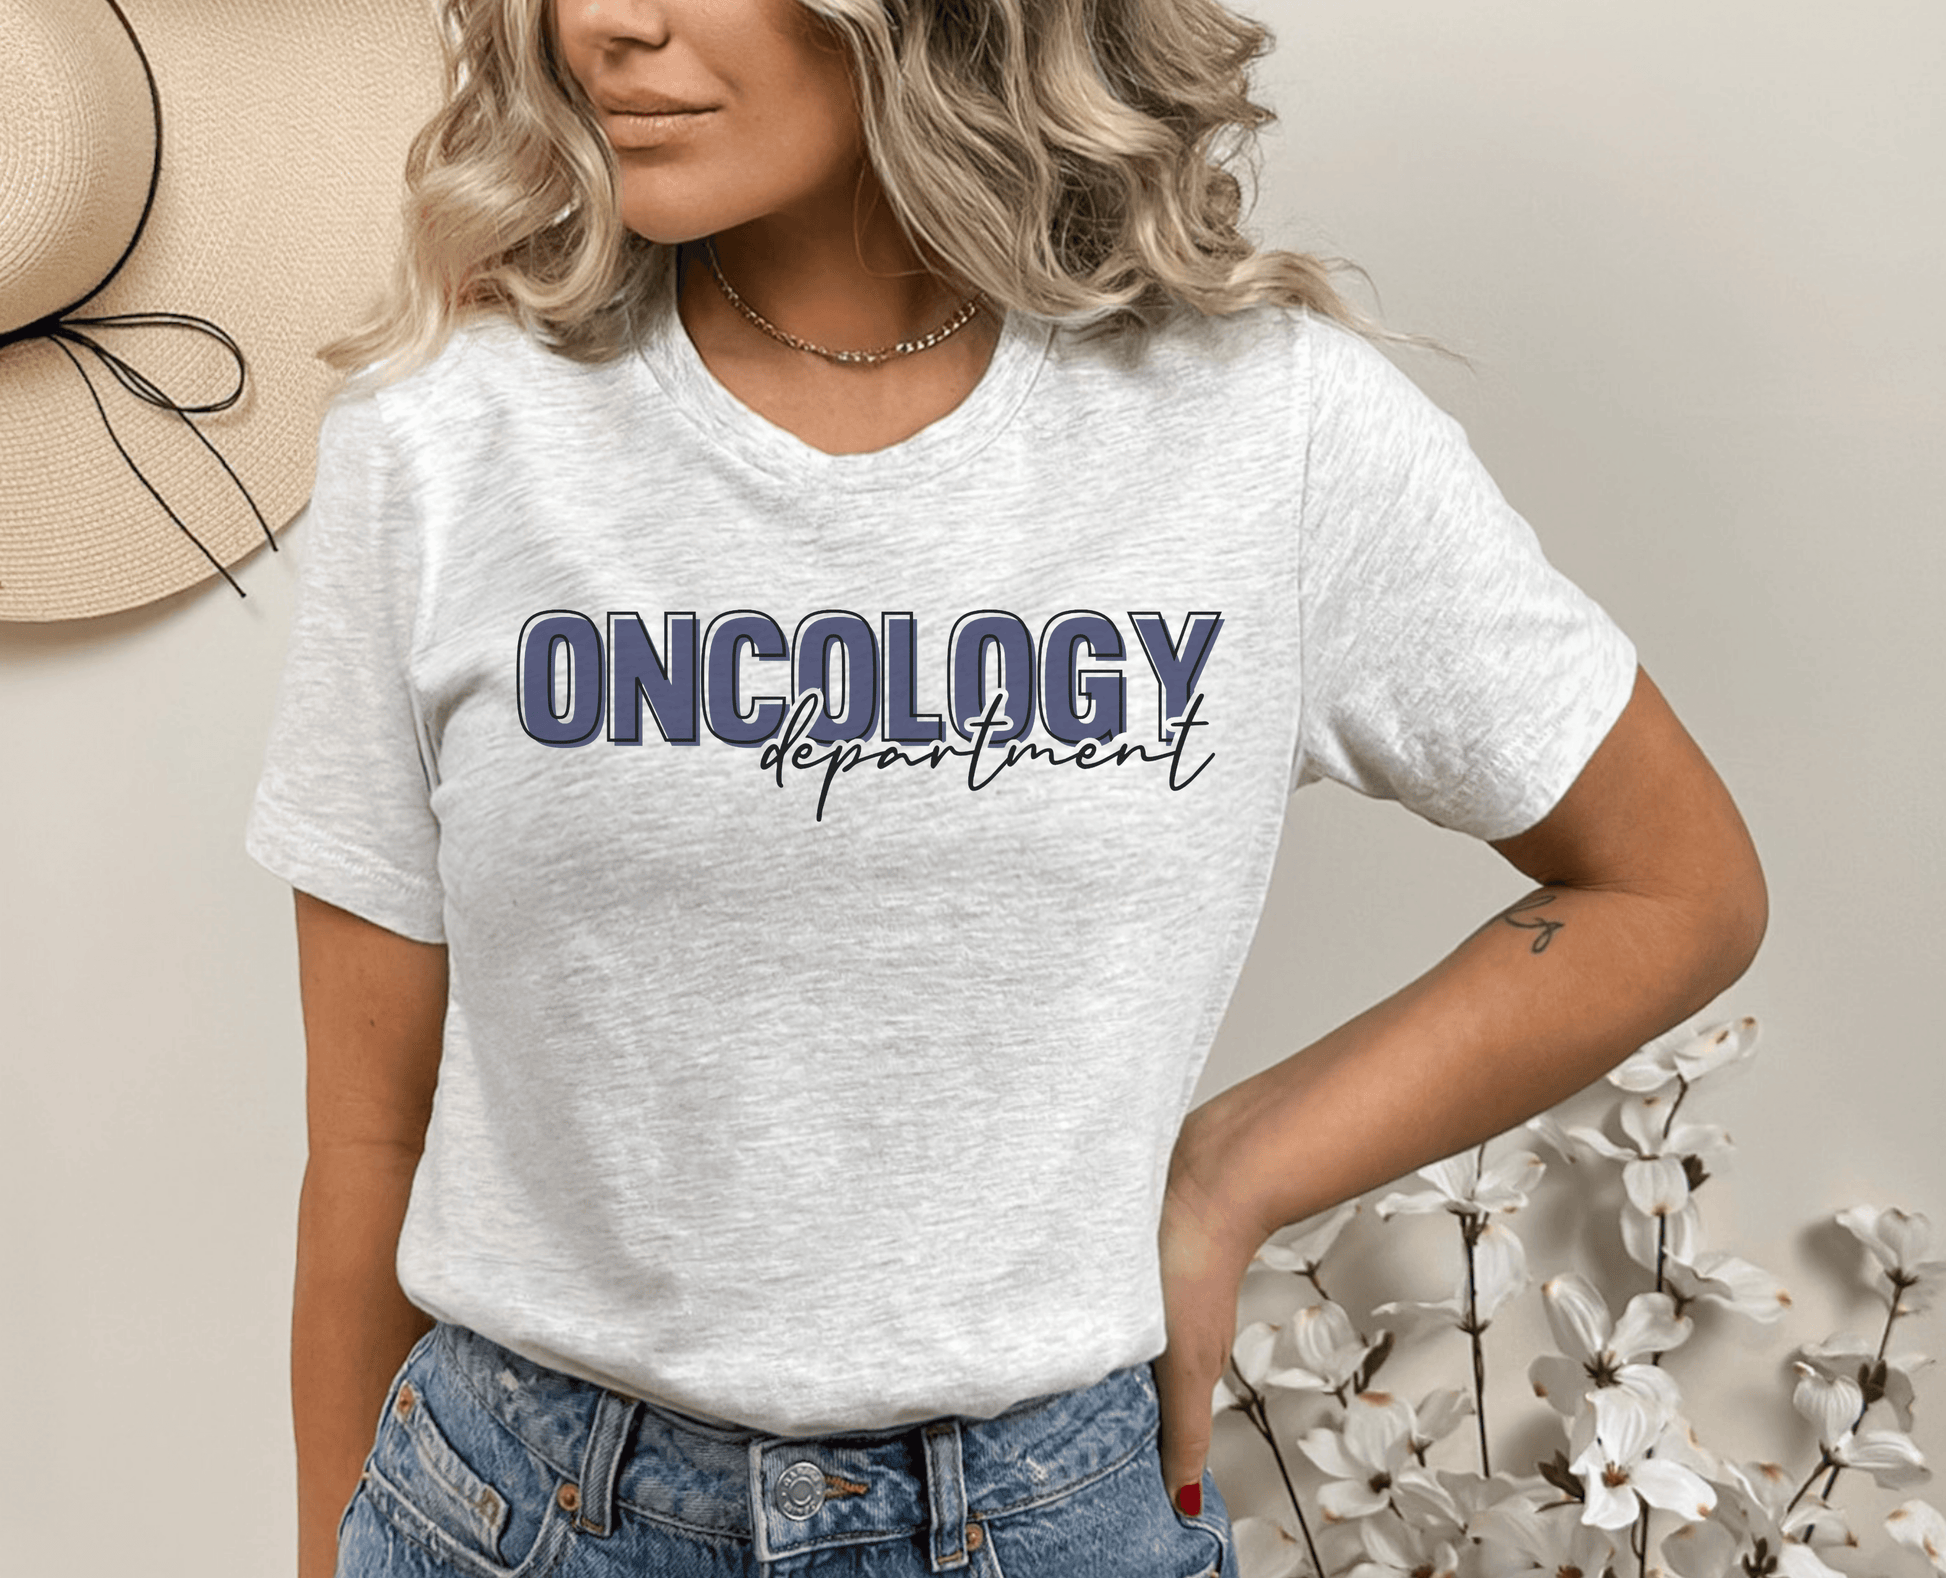 Oncology Department Shirt - BentleyBlueCo